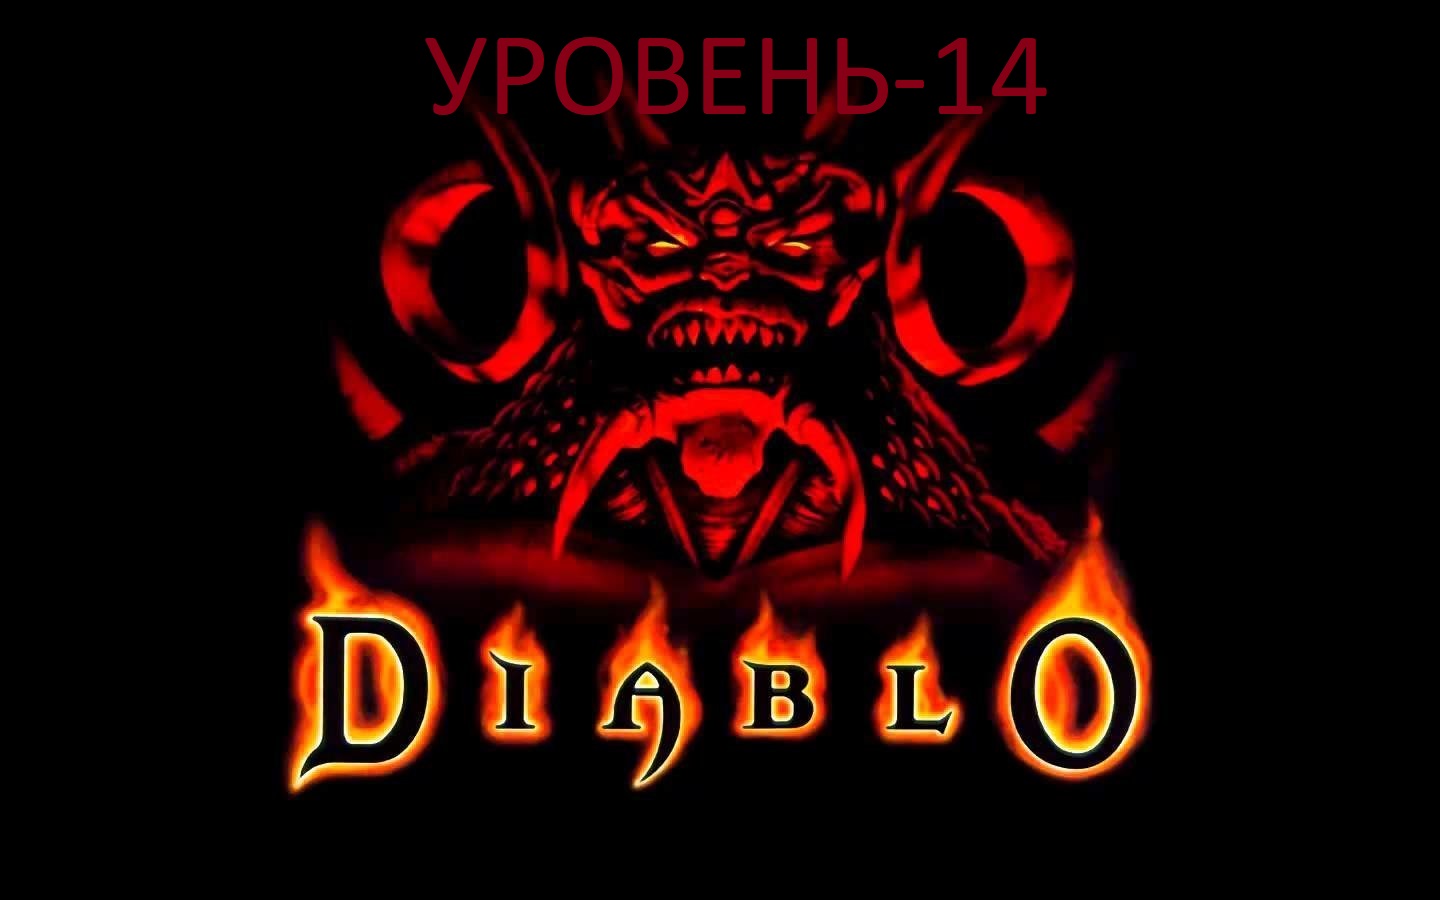 Diablo - уроневь 14.mkv